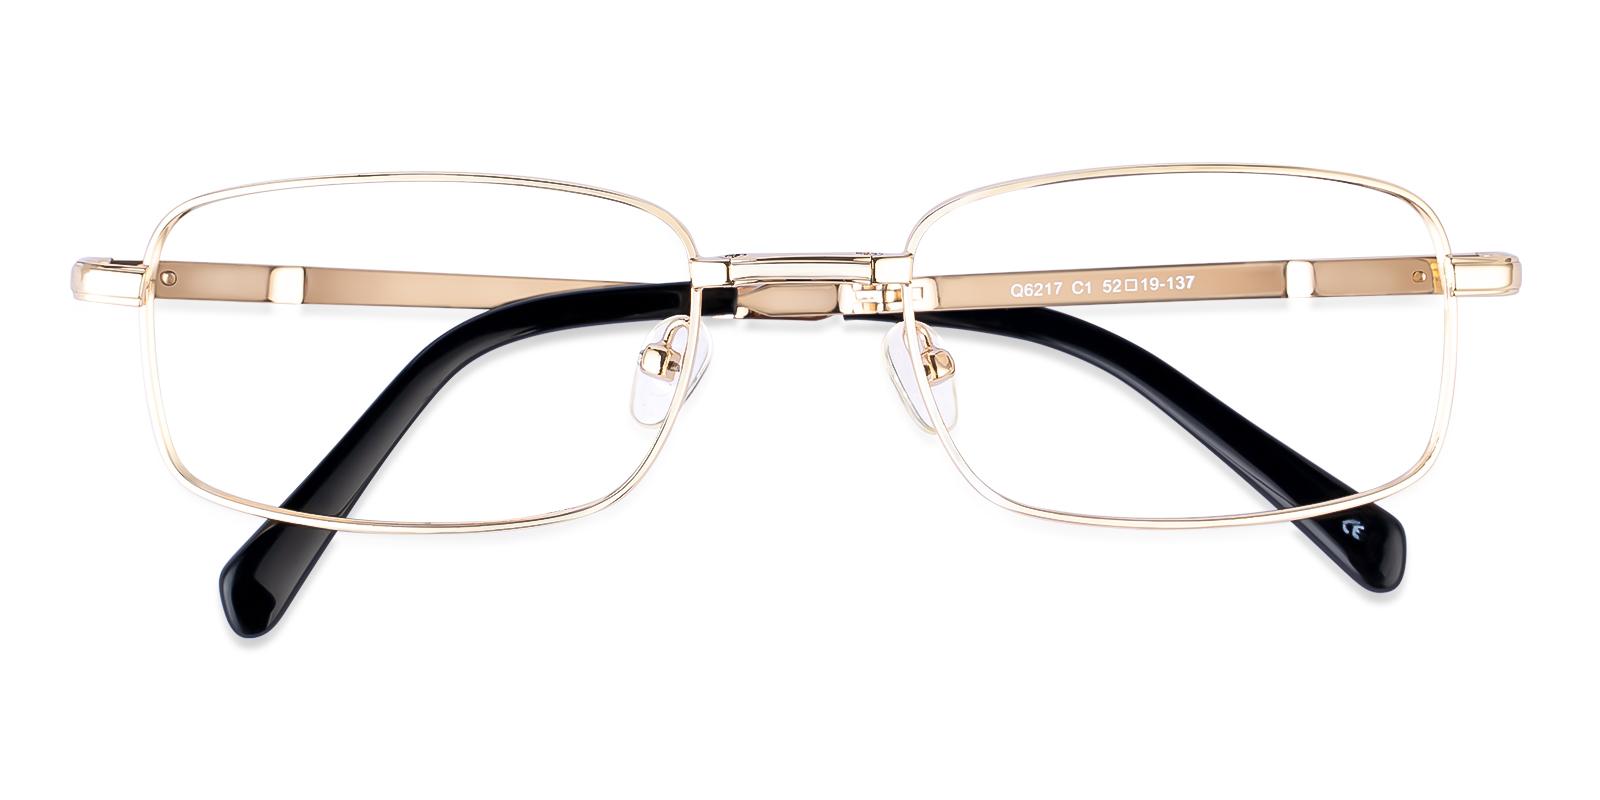 Sebastian Gold Metal Eyeglasses , Foldable , NosePads Frames from ABBE Glasses